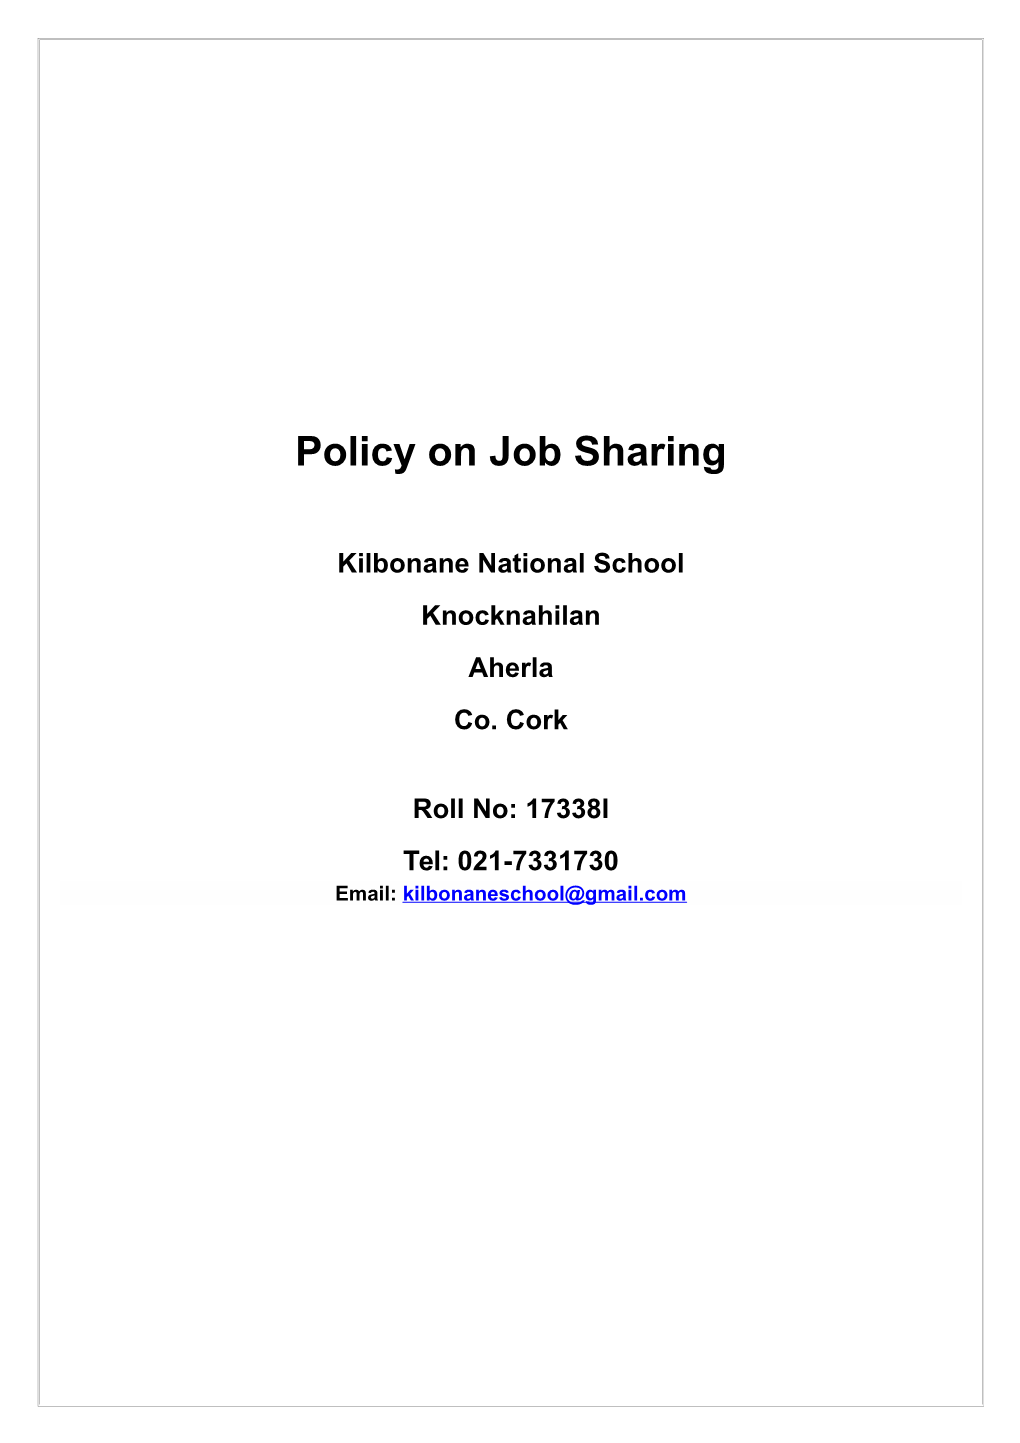 Job Sharing Policy